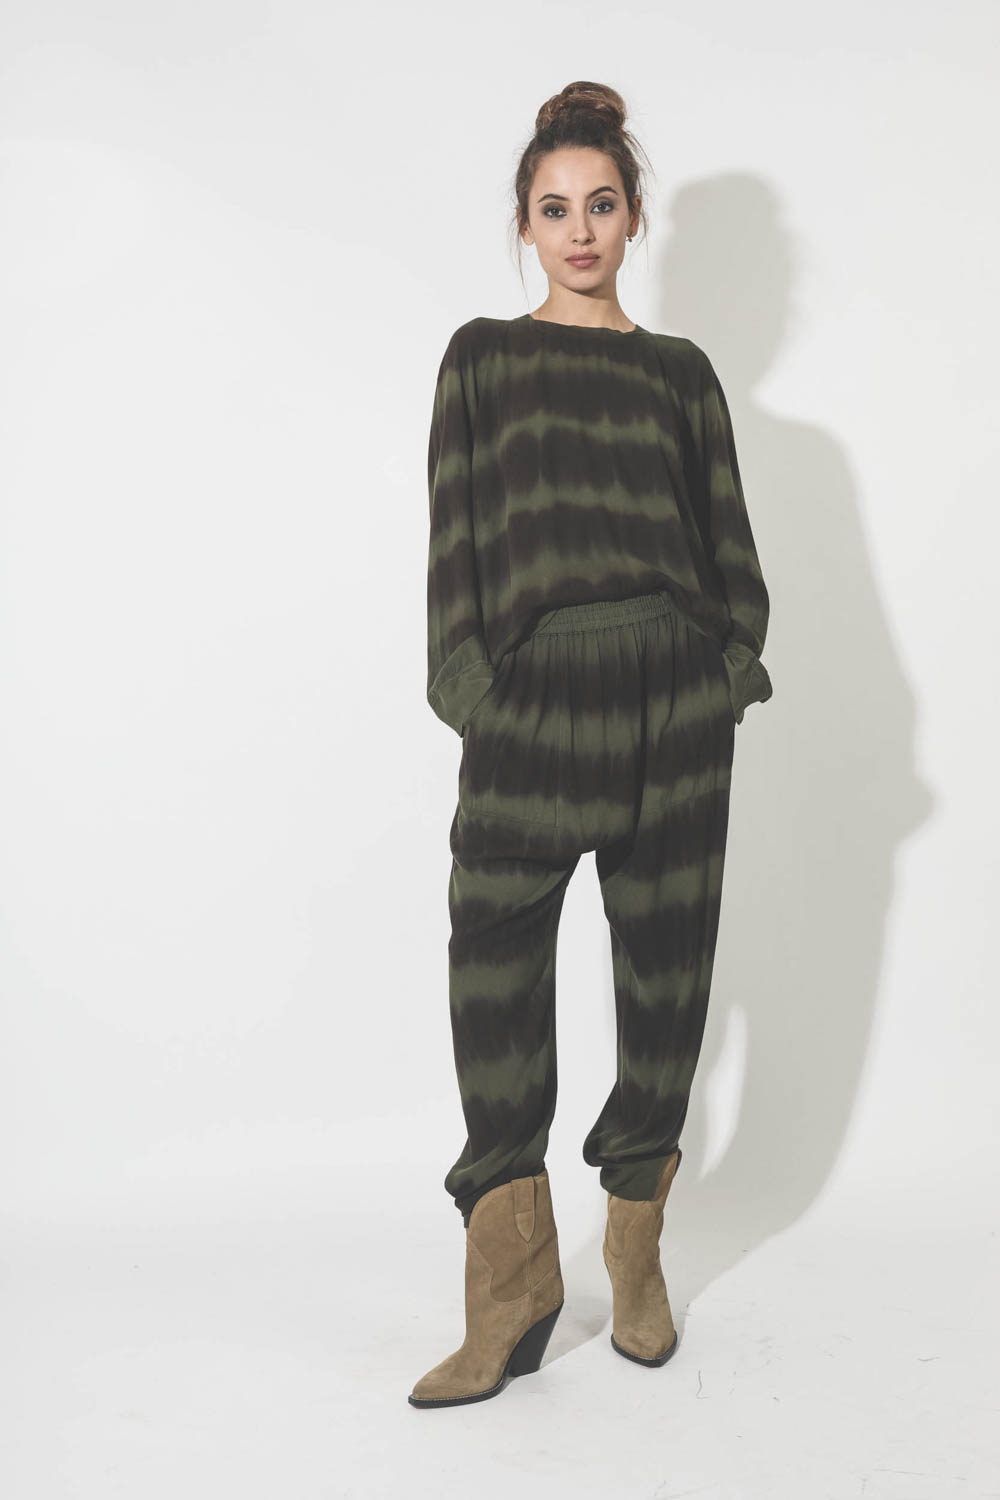 Raquel Allegra Raglan Sweatshirt – Forest Black and Stripes Tie Dye